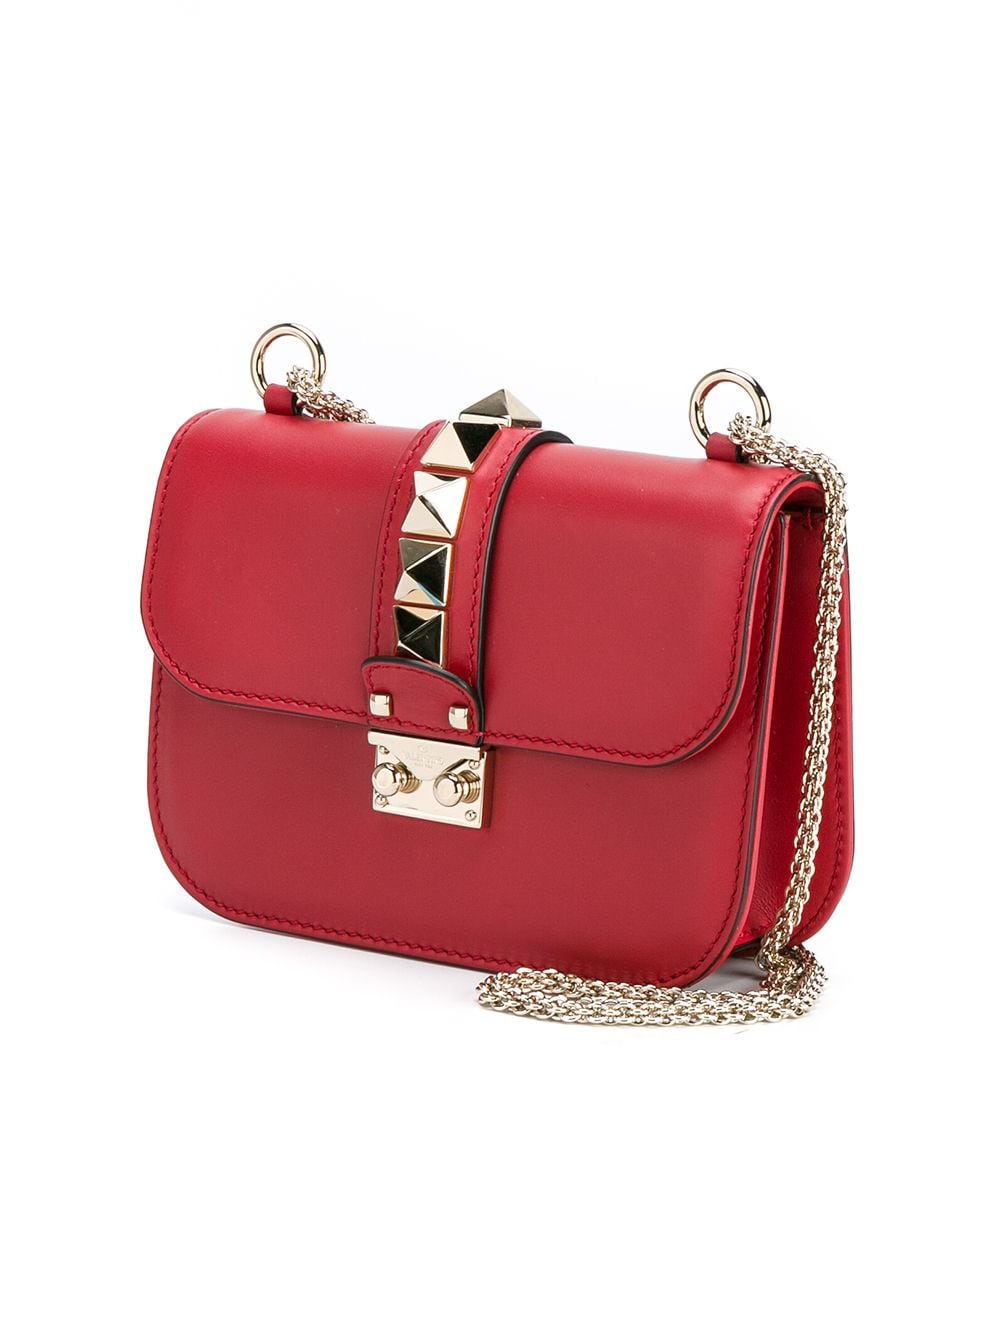 Valentino Small Rockstud Glam Lock Shoulder Bag